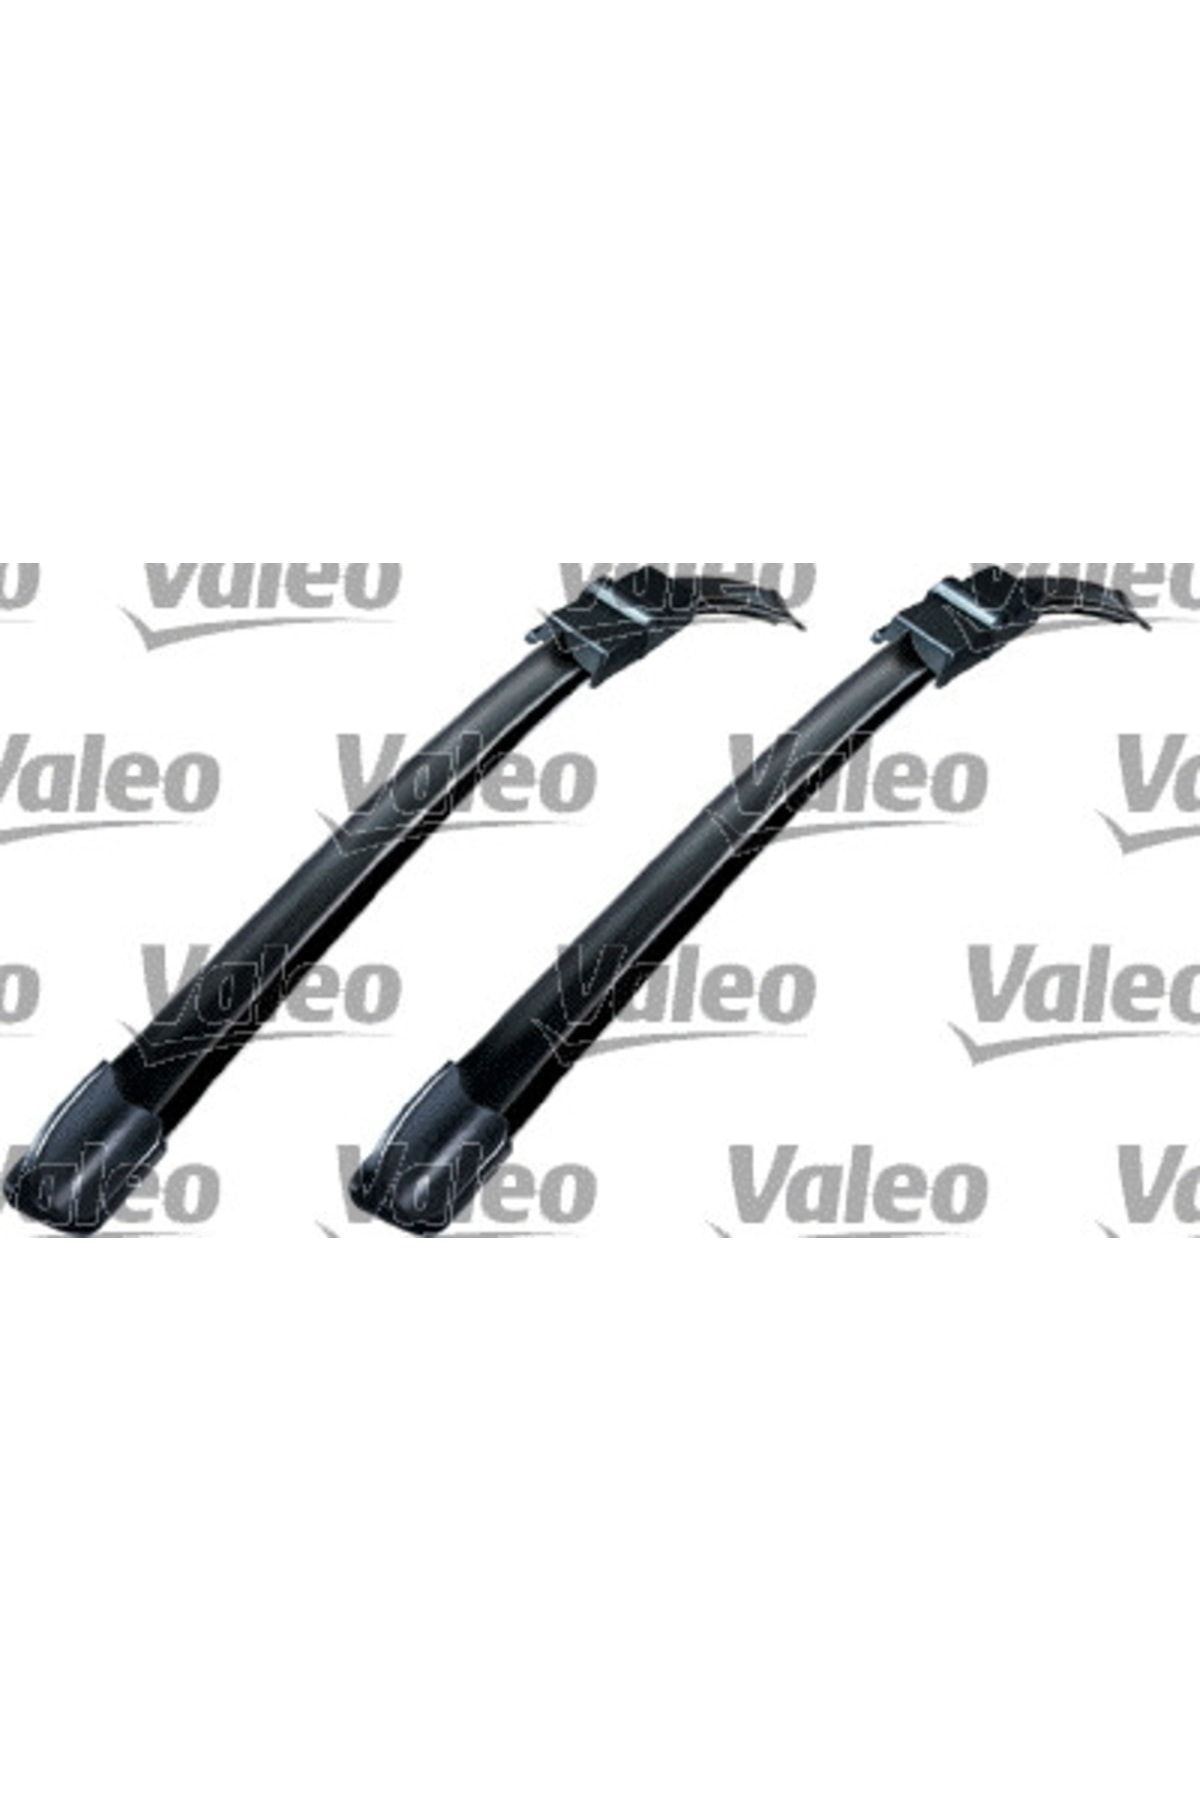 Valeo Swf Vısıoflex Flat Blade x2 650 + 425 cm Ford Focus Iı; 119394